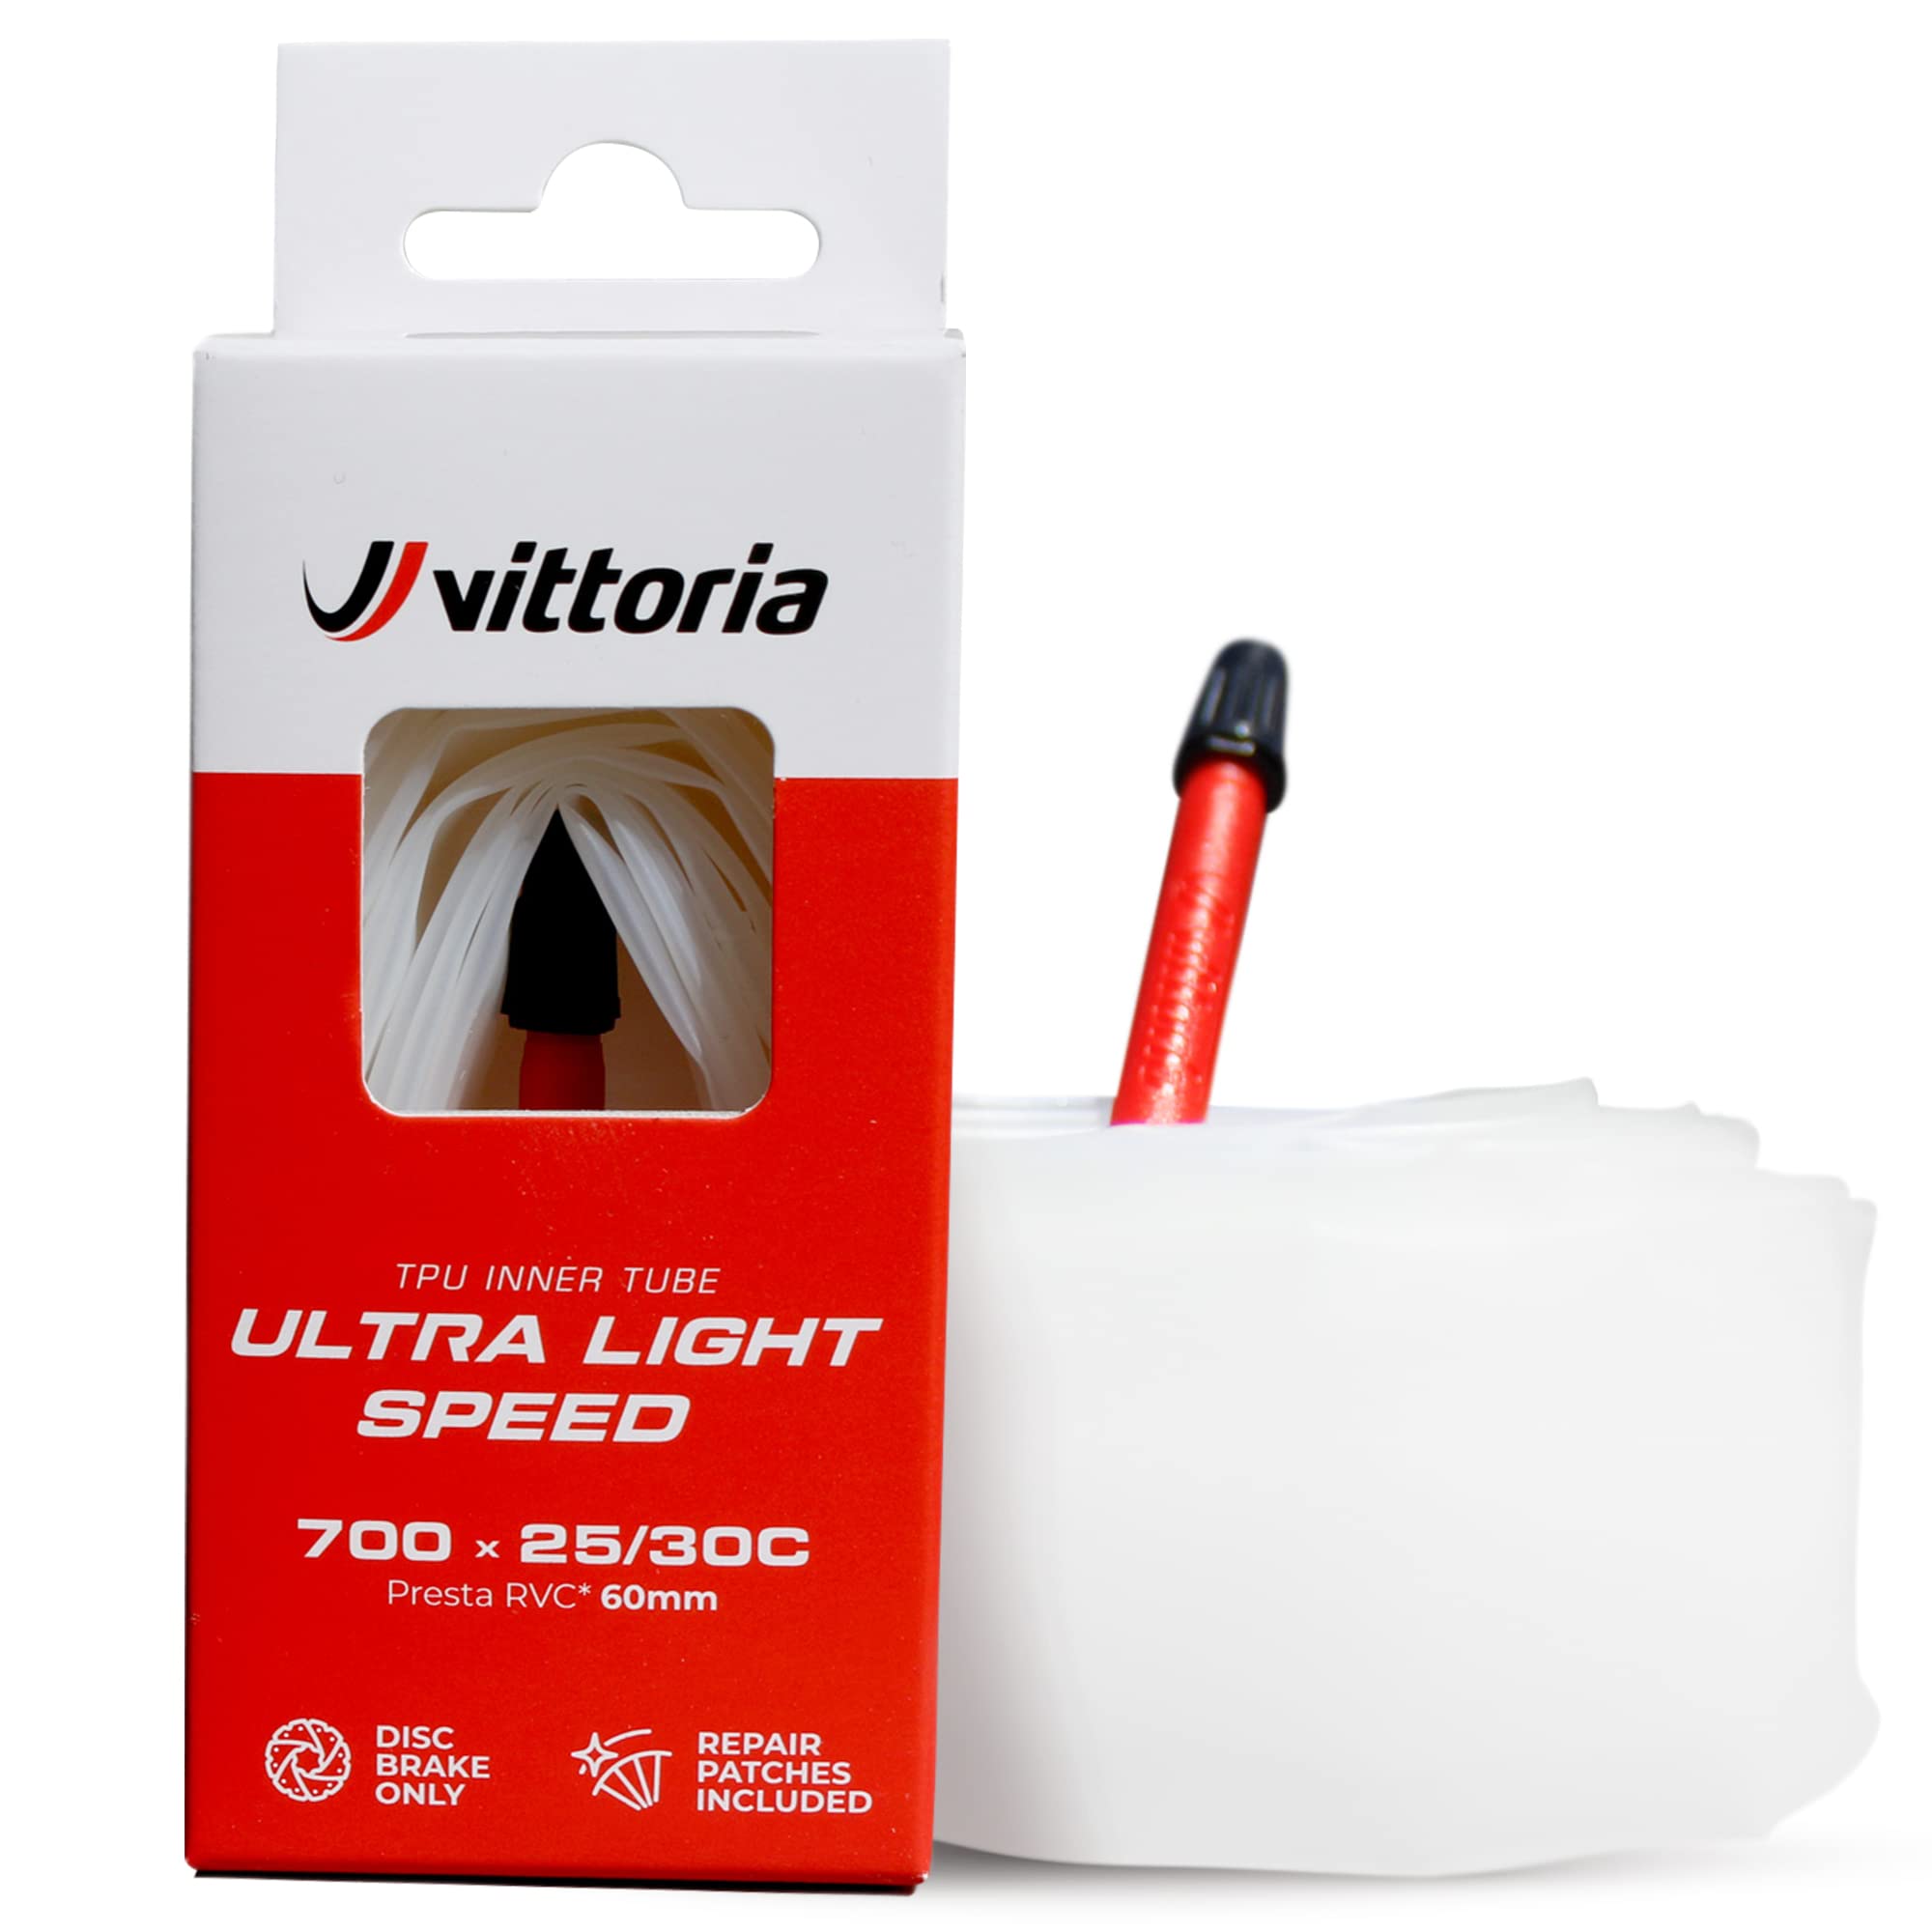 Ultra Light Speed TPU inner tube